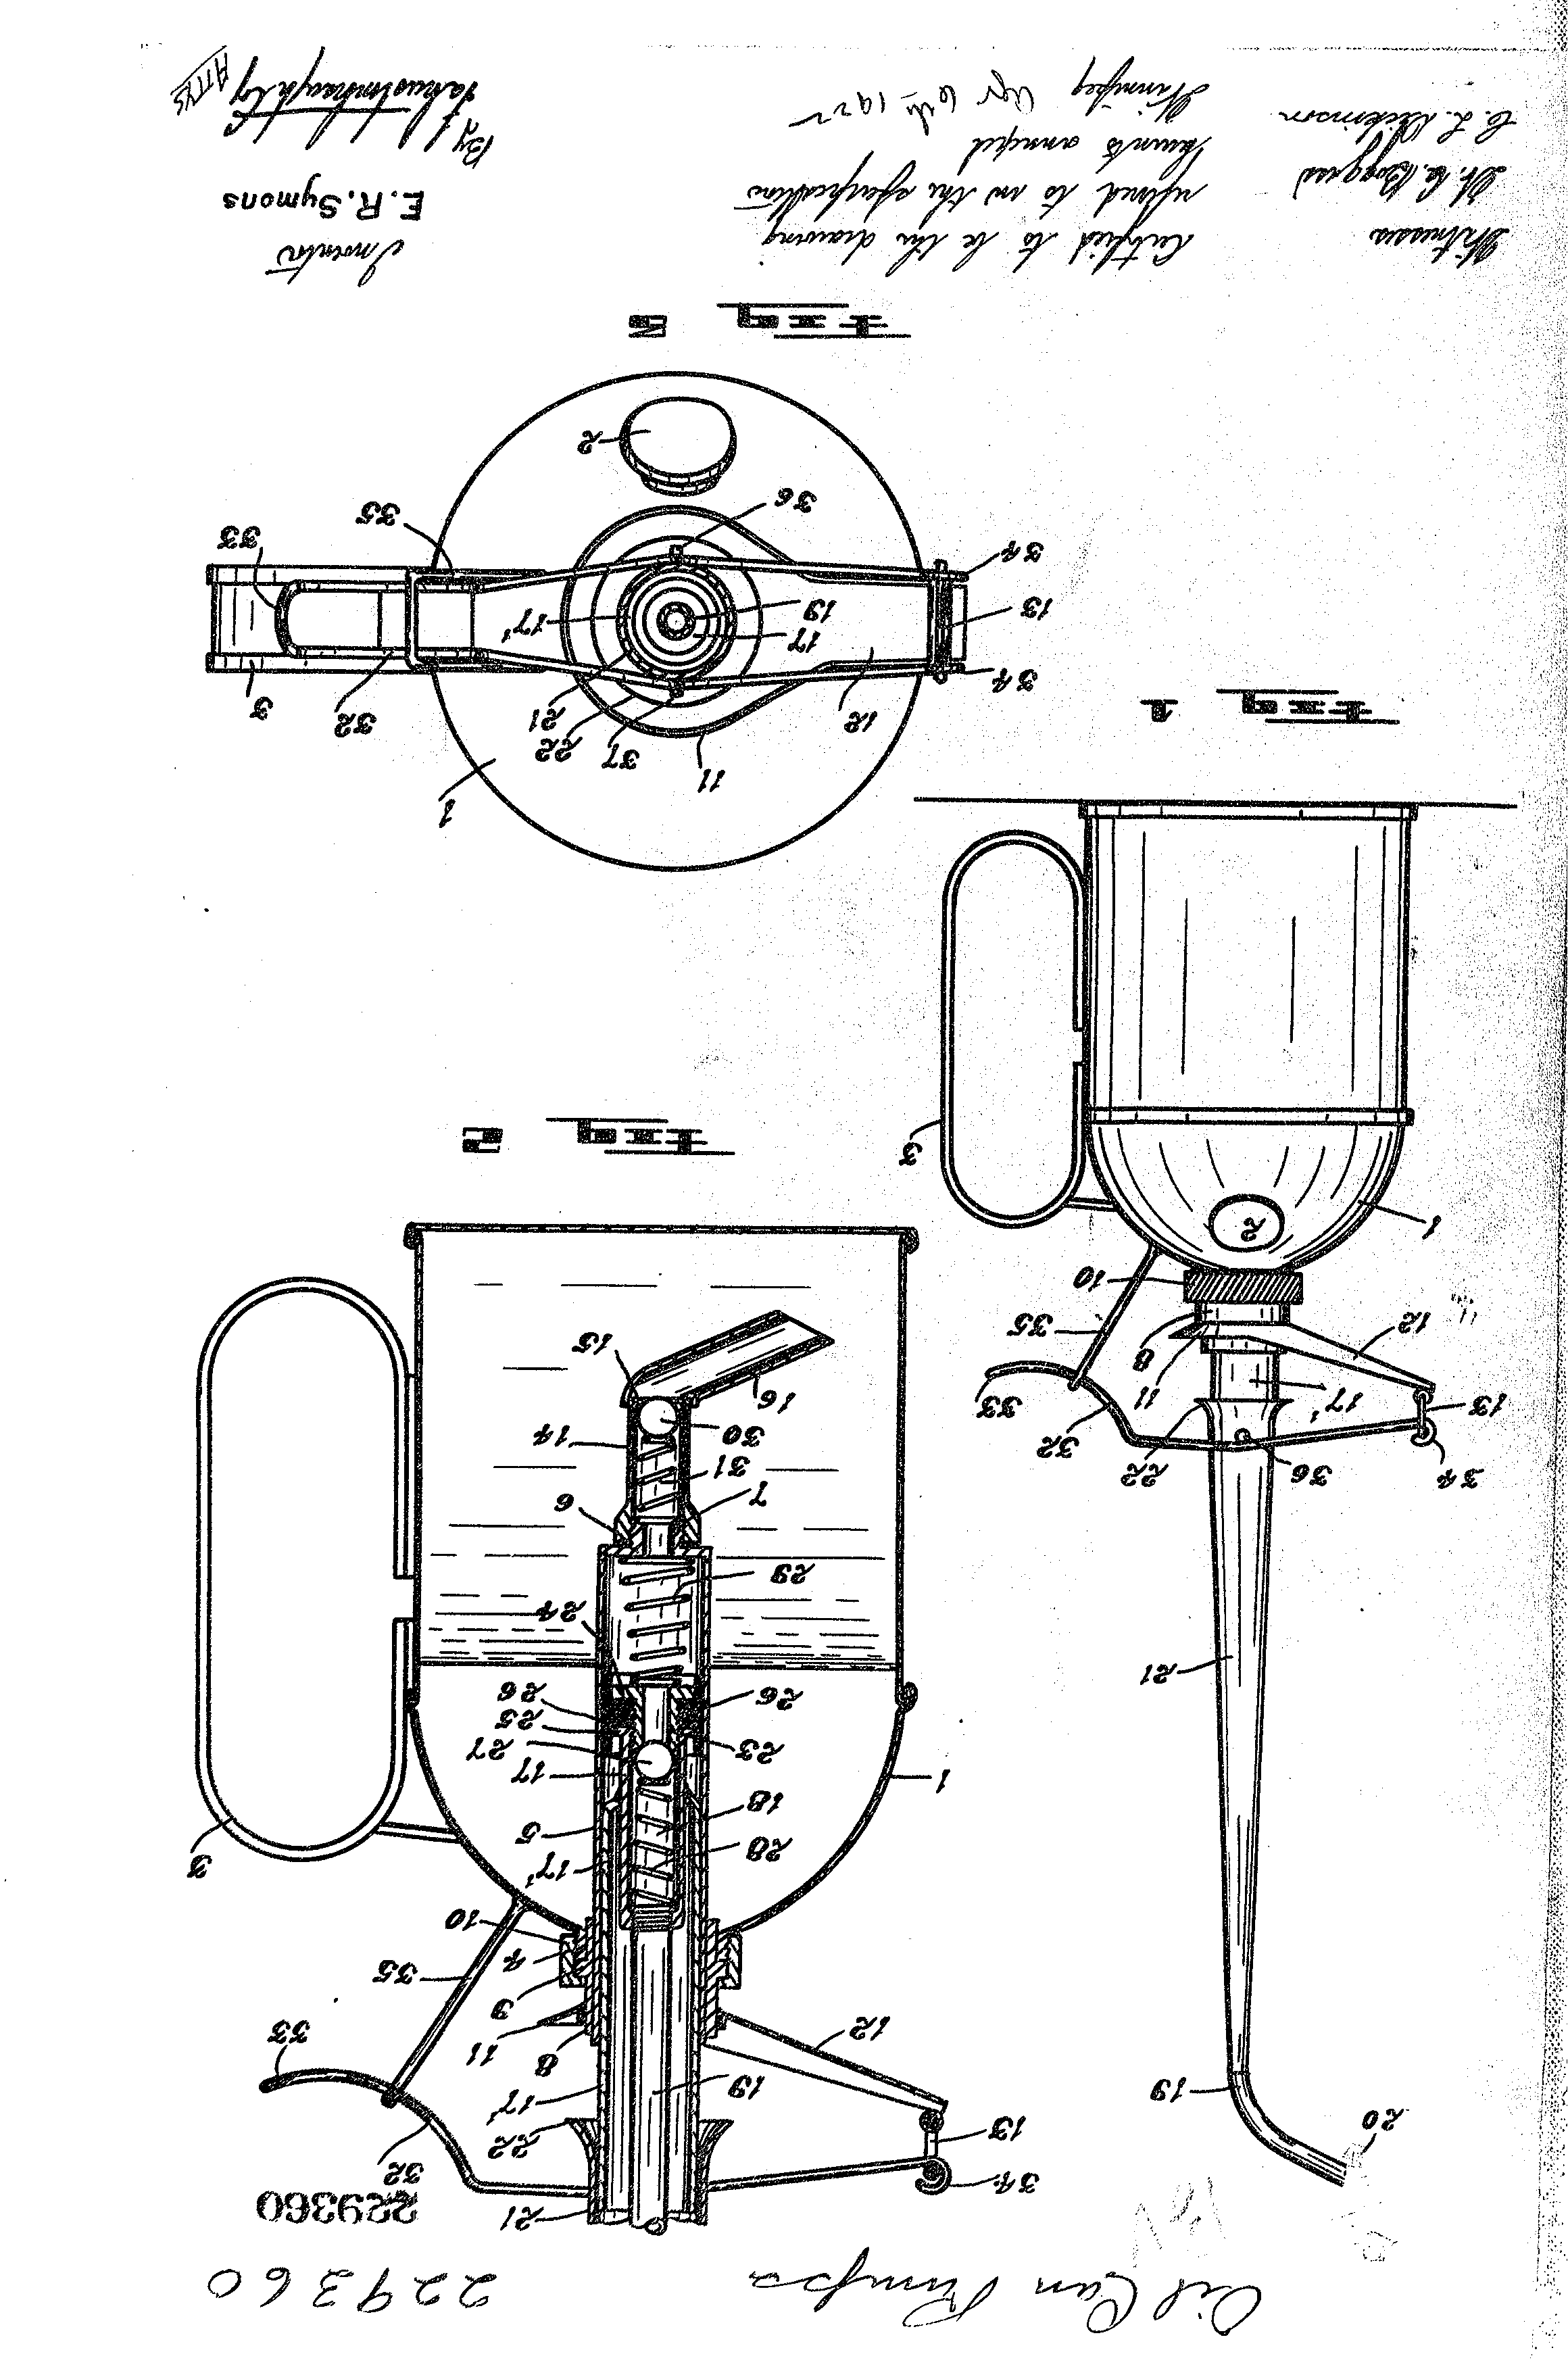 Document de brevet canadien 229360. Dessins 19941213. Image 1 de 1